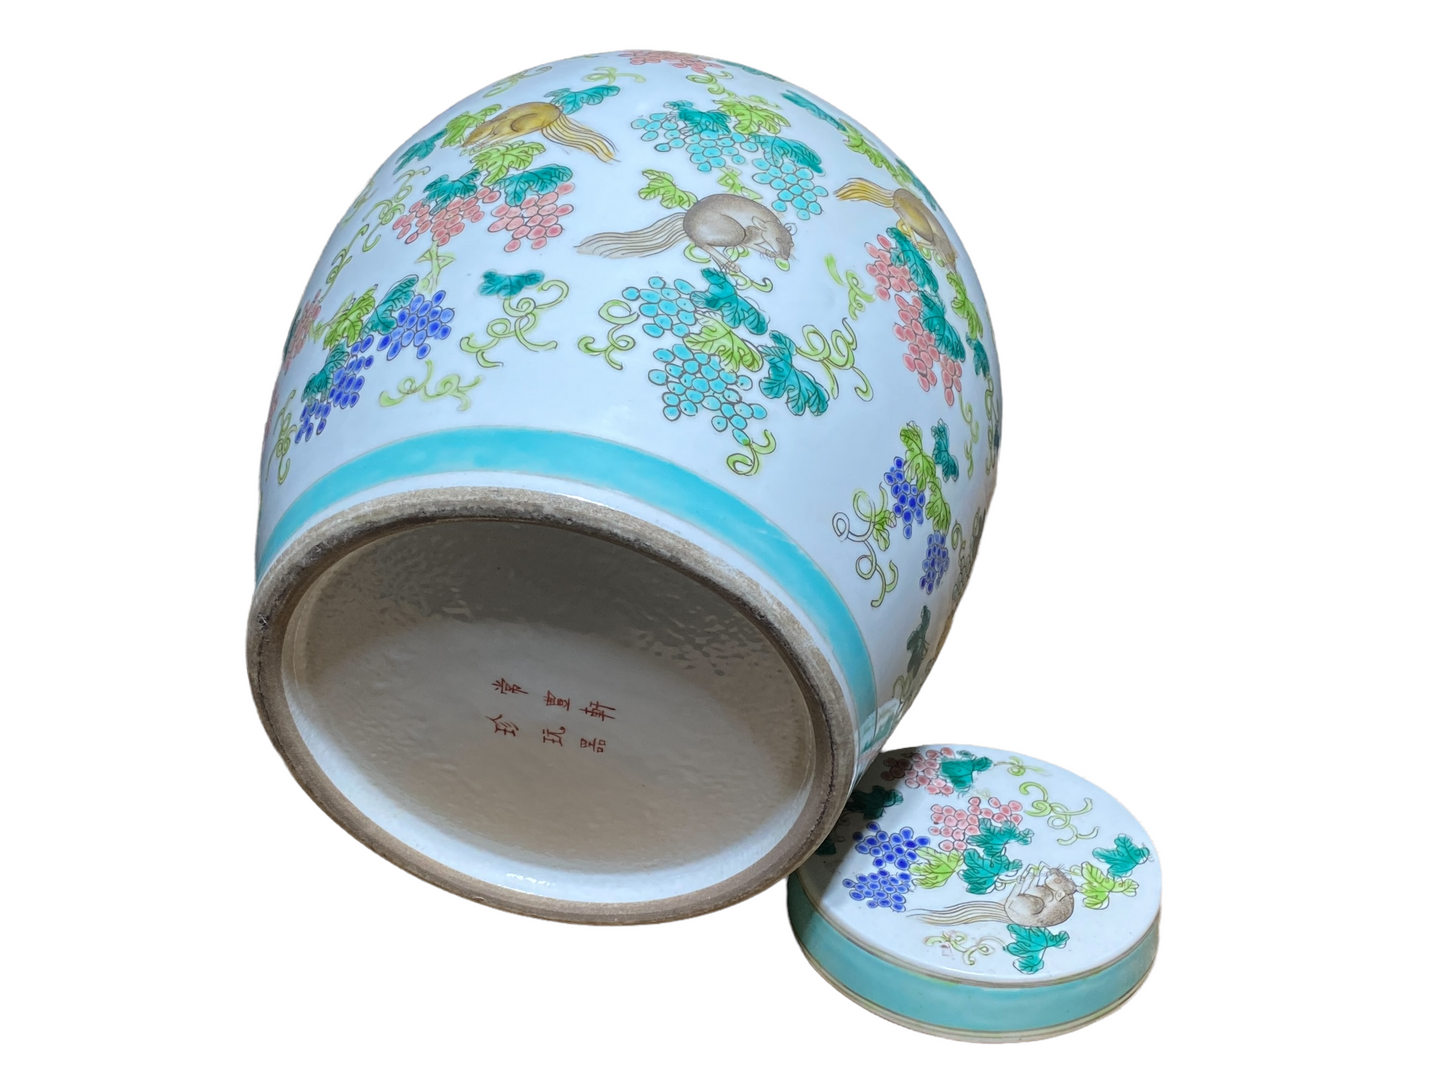 #4824 Chinoiserie Porcelain Famille Verte Ginger Jar 10.5" H